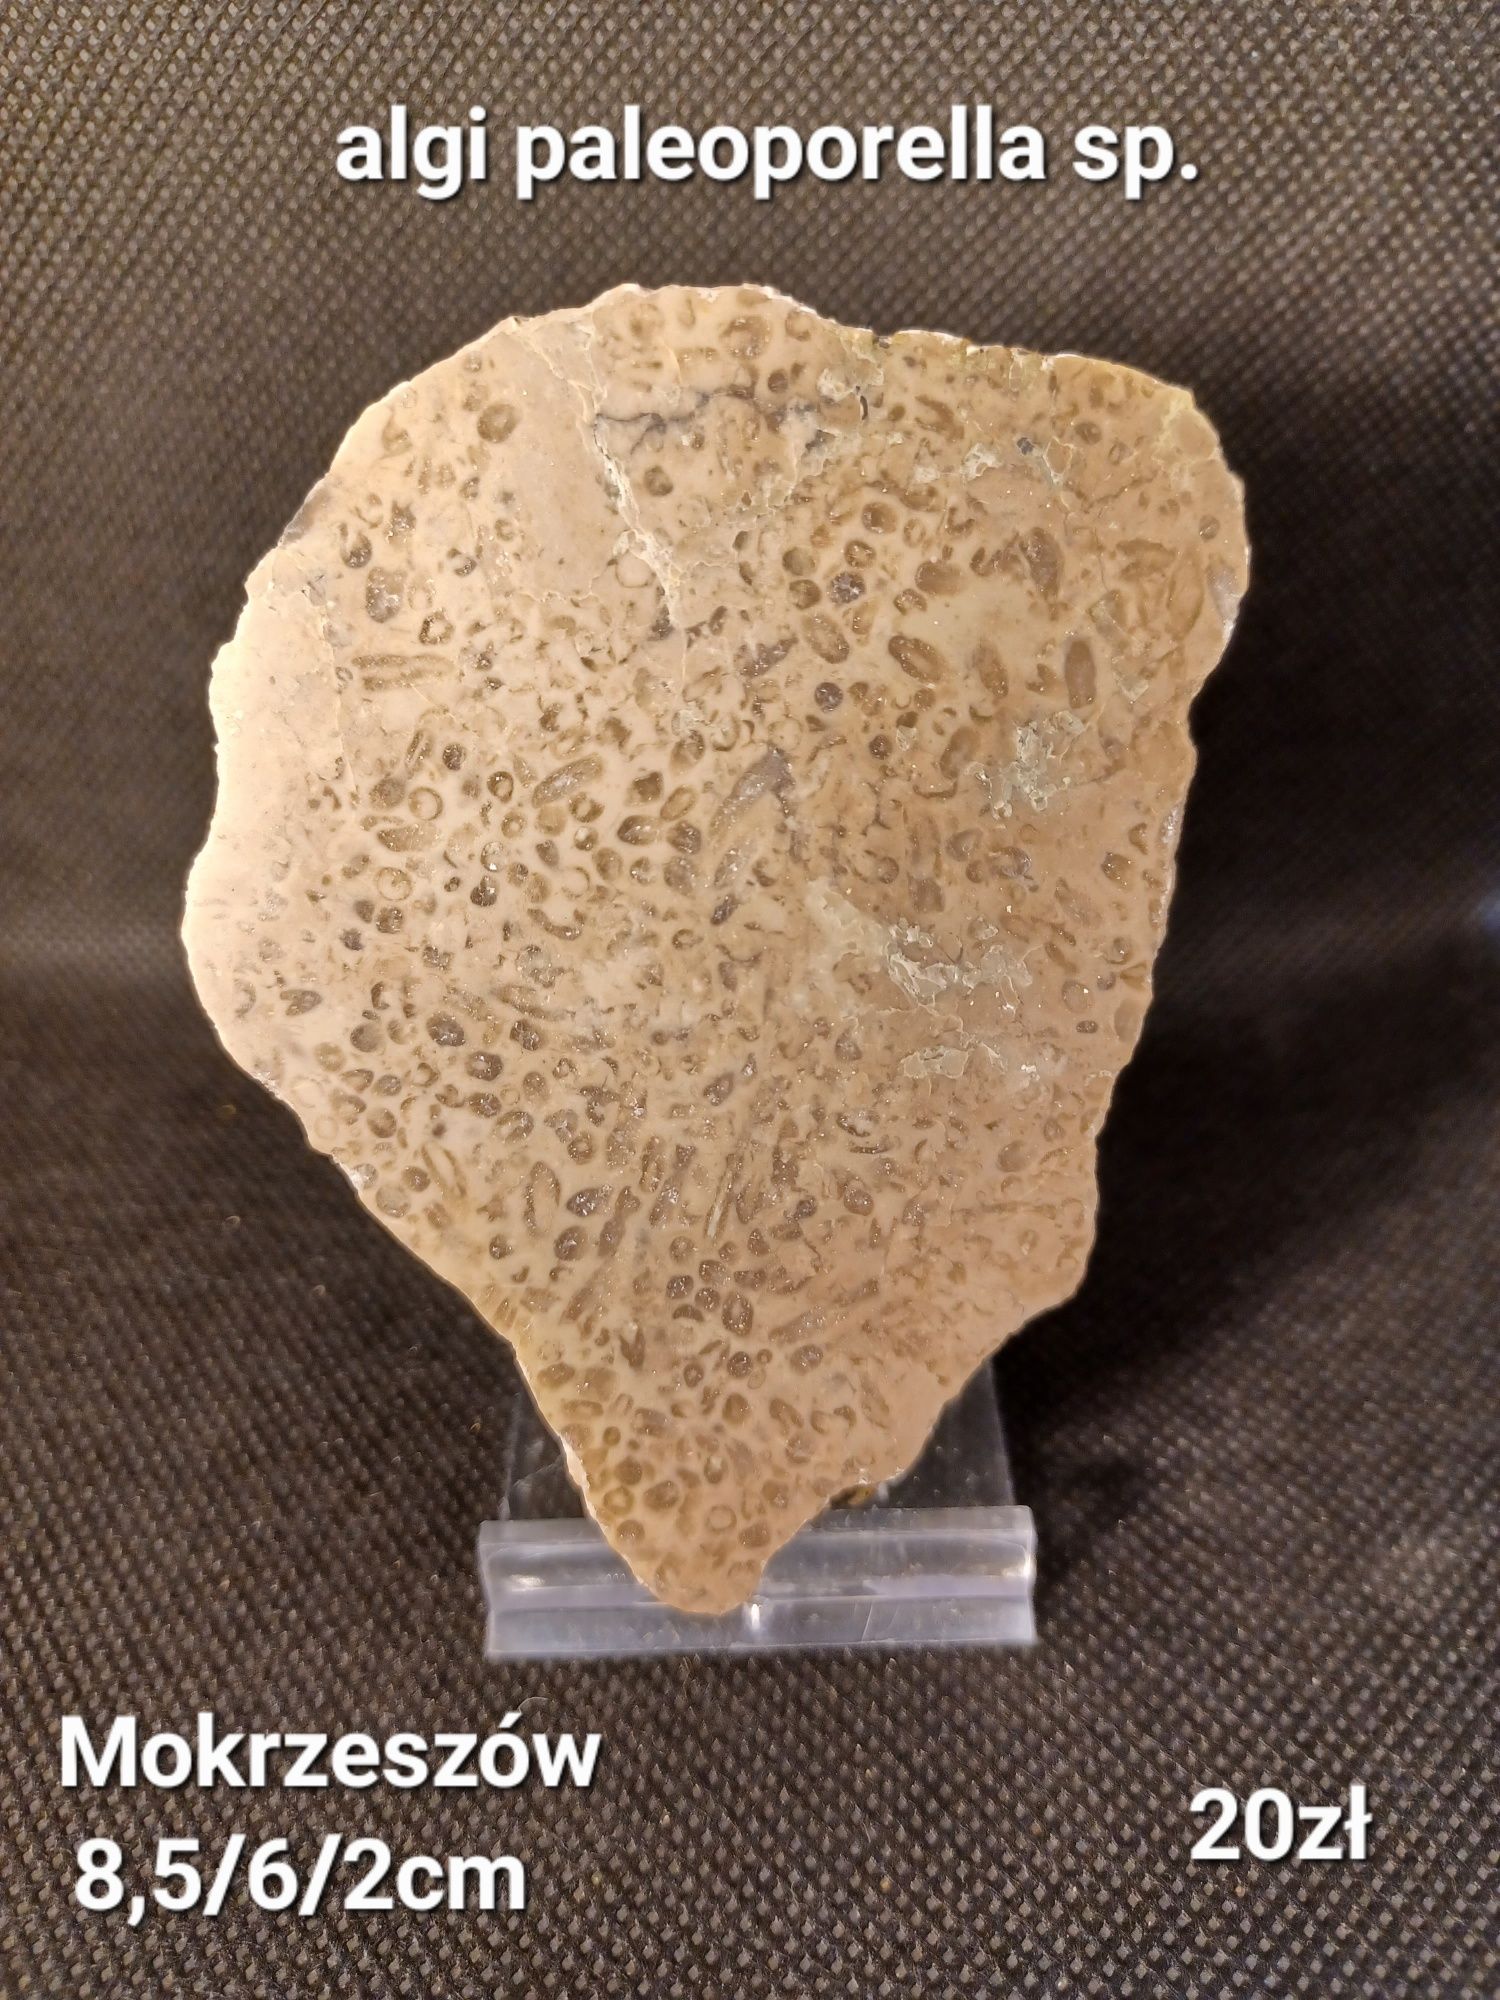 Minerały skamieniałości skały algi paleoporella sp.